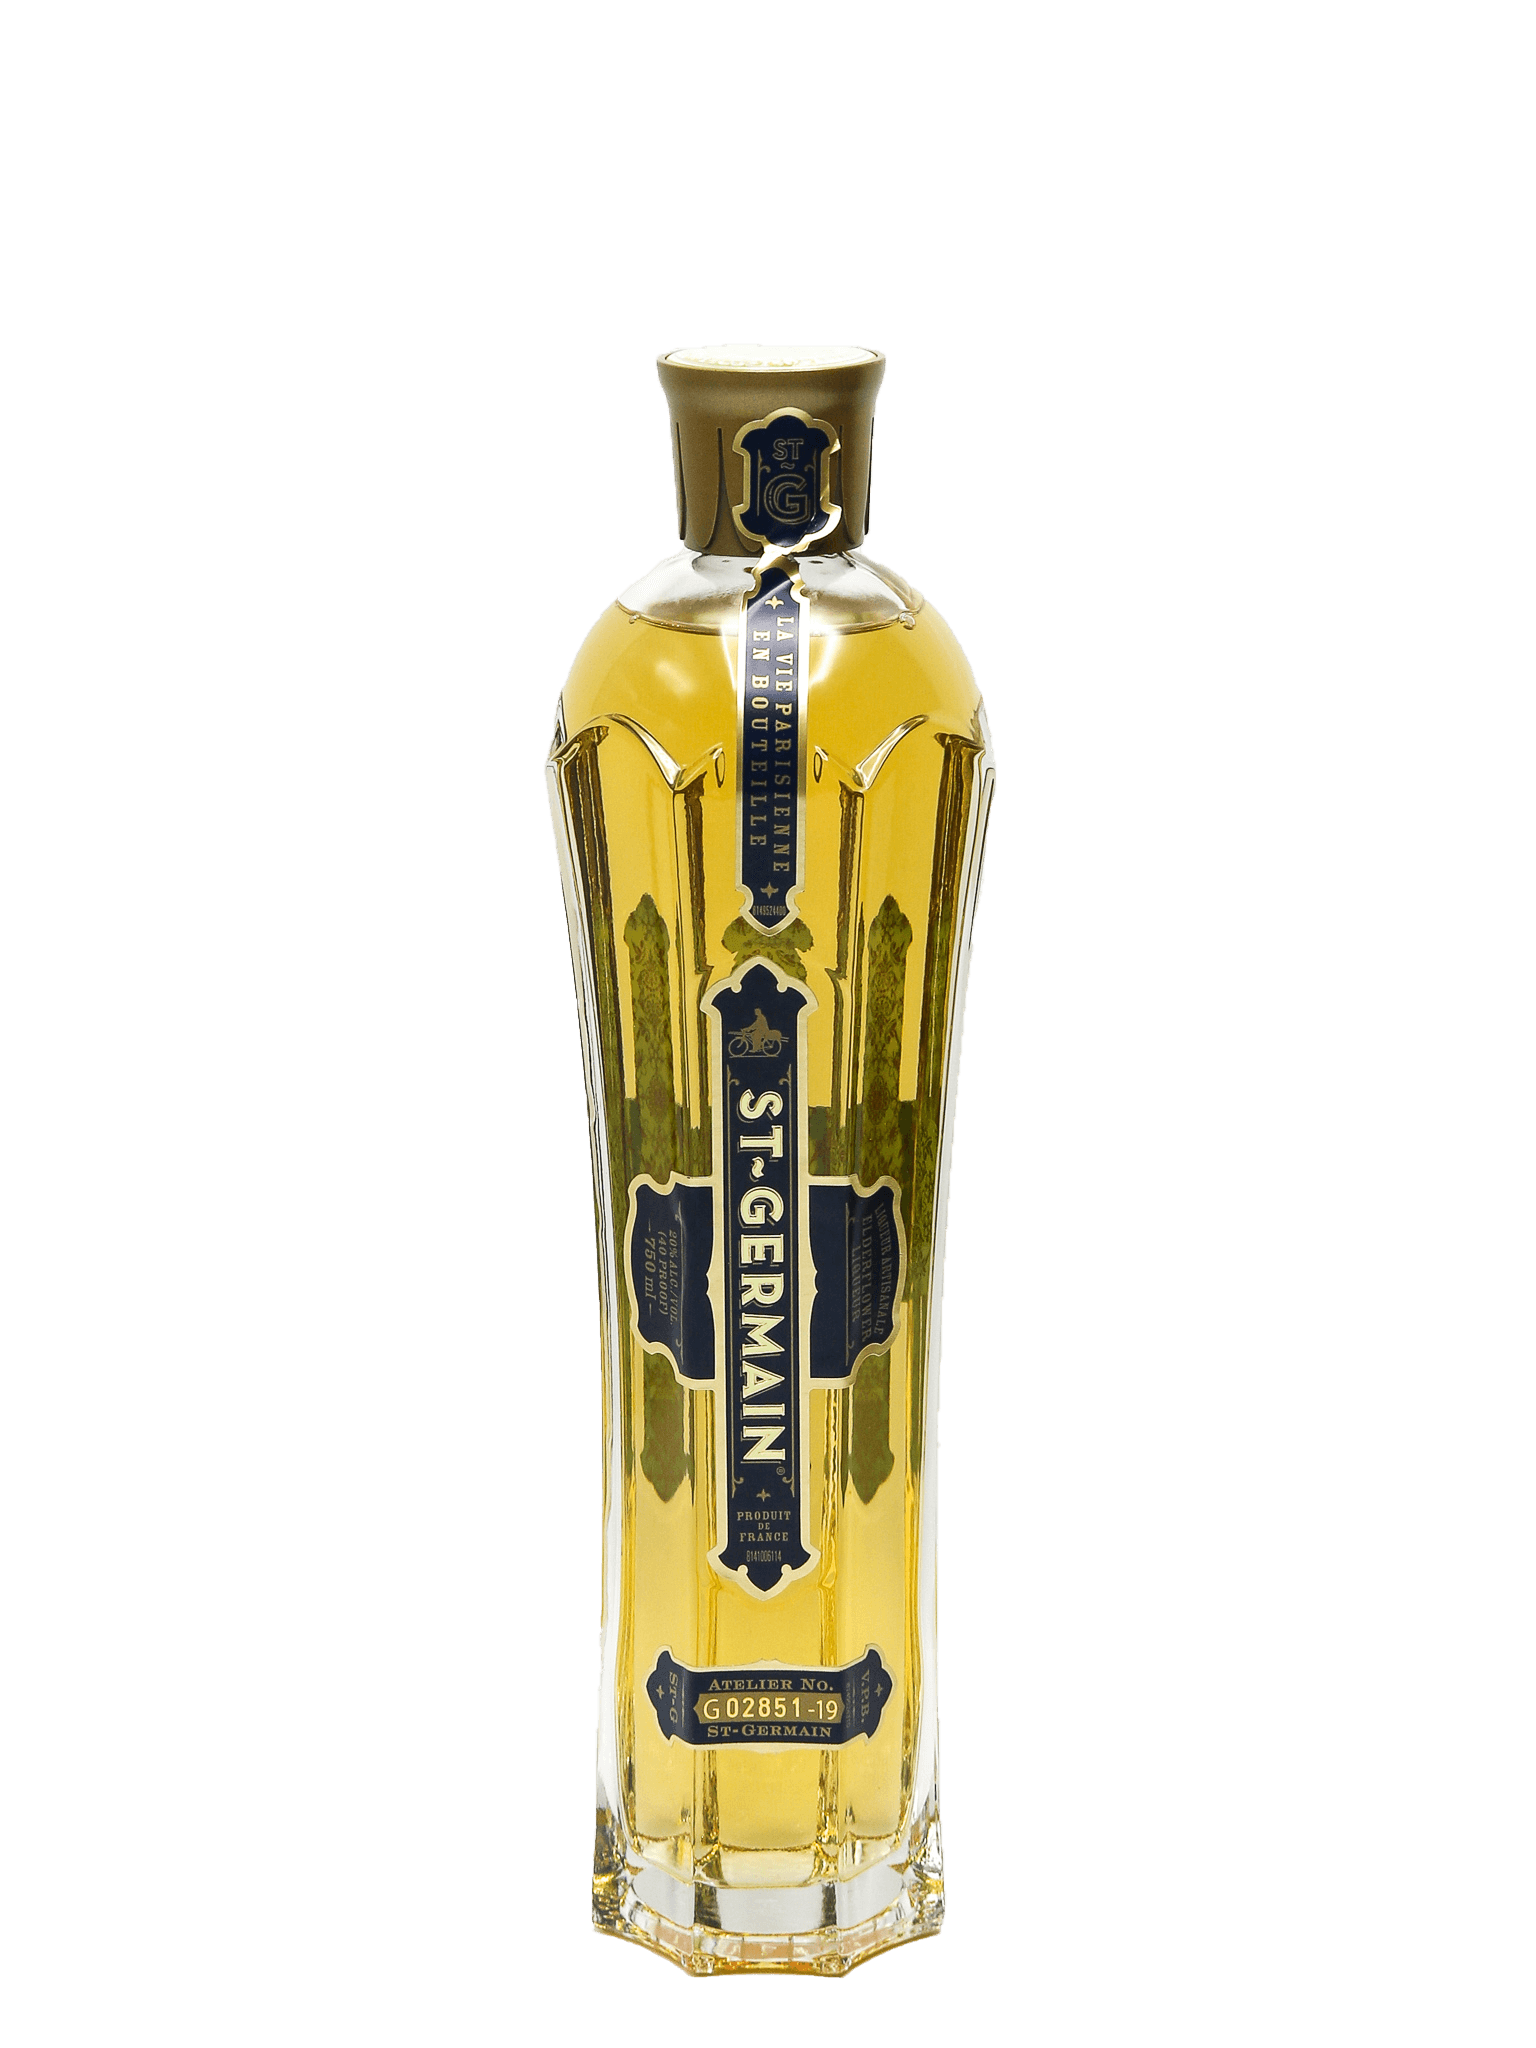 St Germain Elderflower Liqueur 750mL